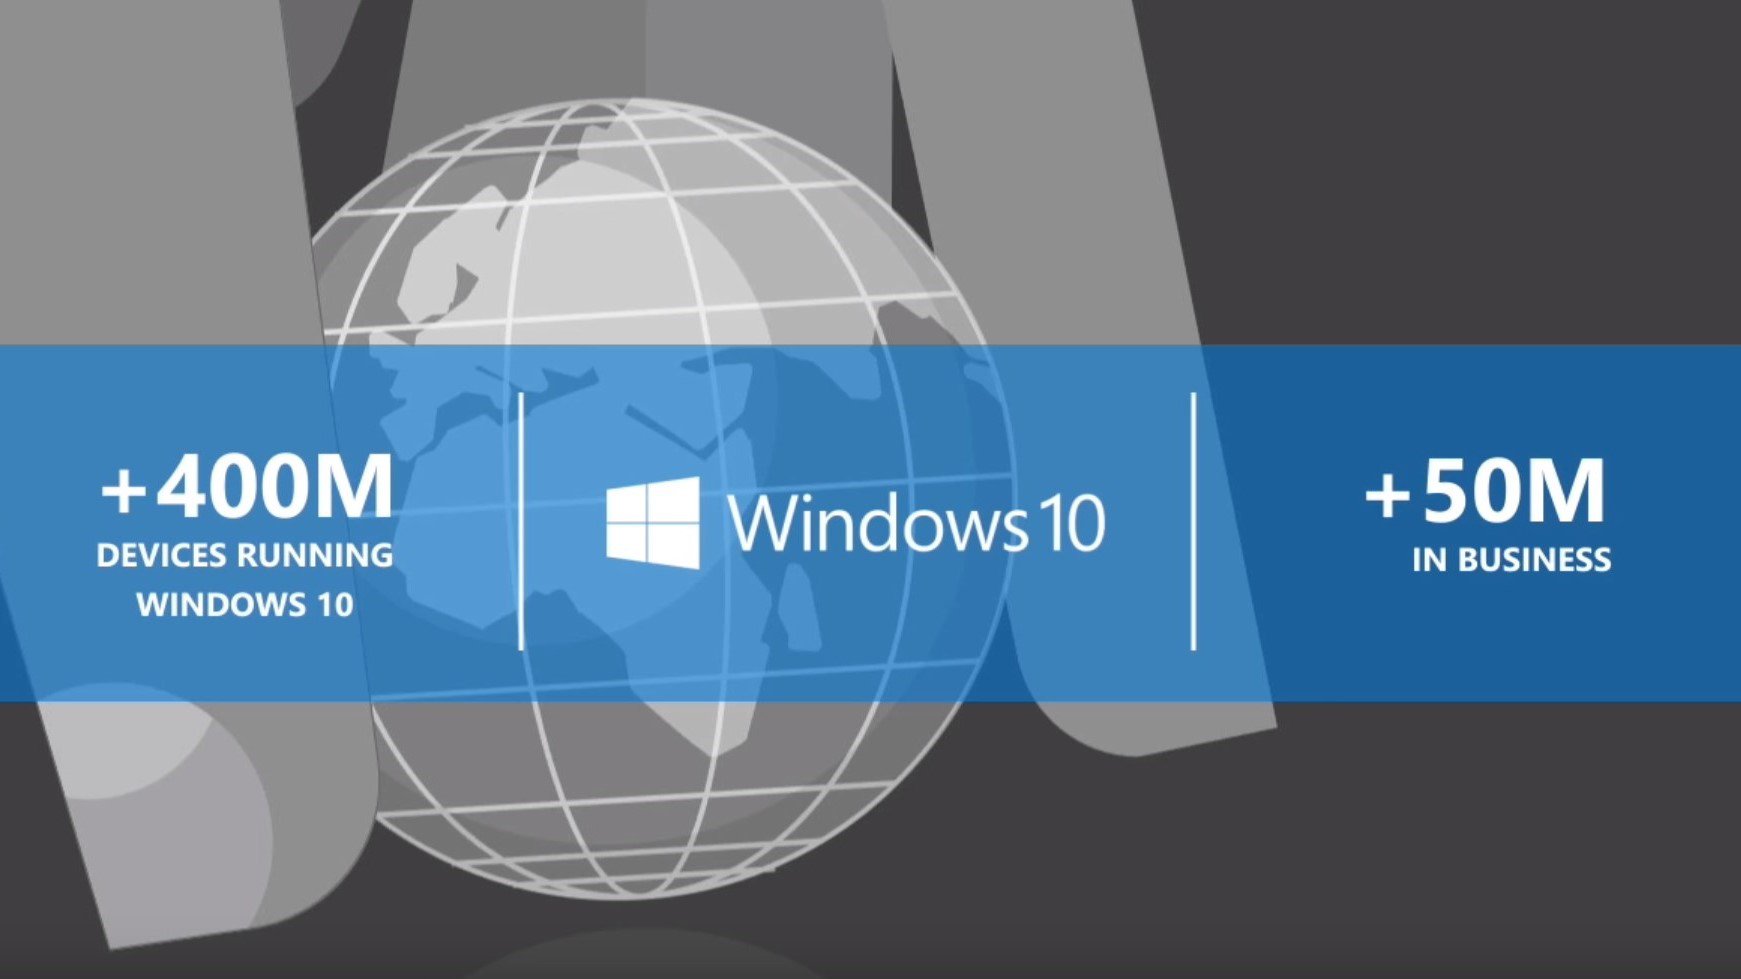 ｢Windows 10｣、企業での稼働端末数は5,000万台以上